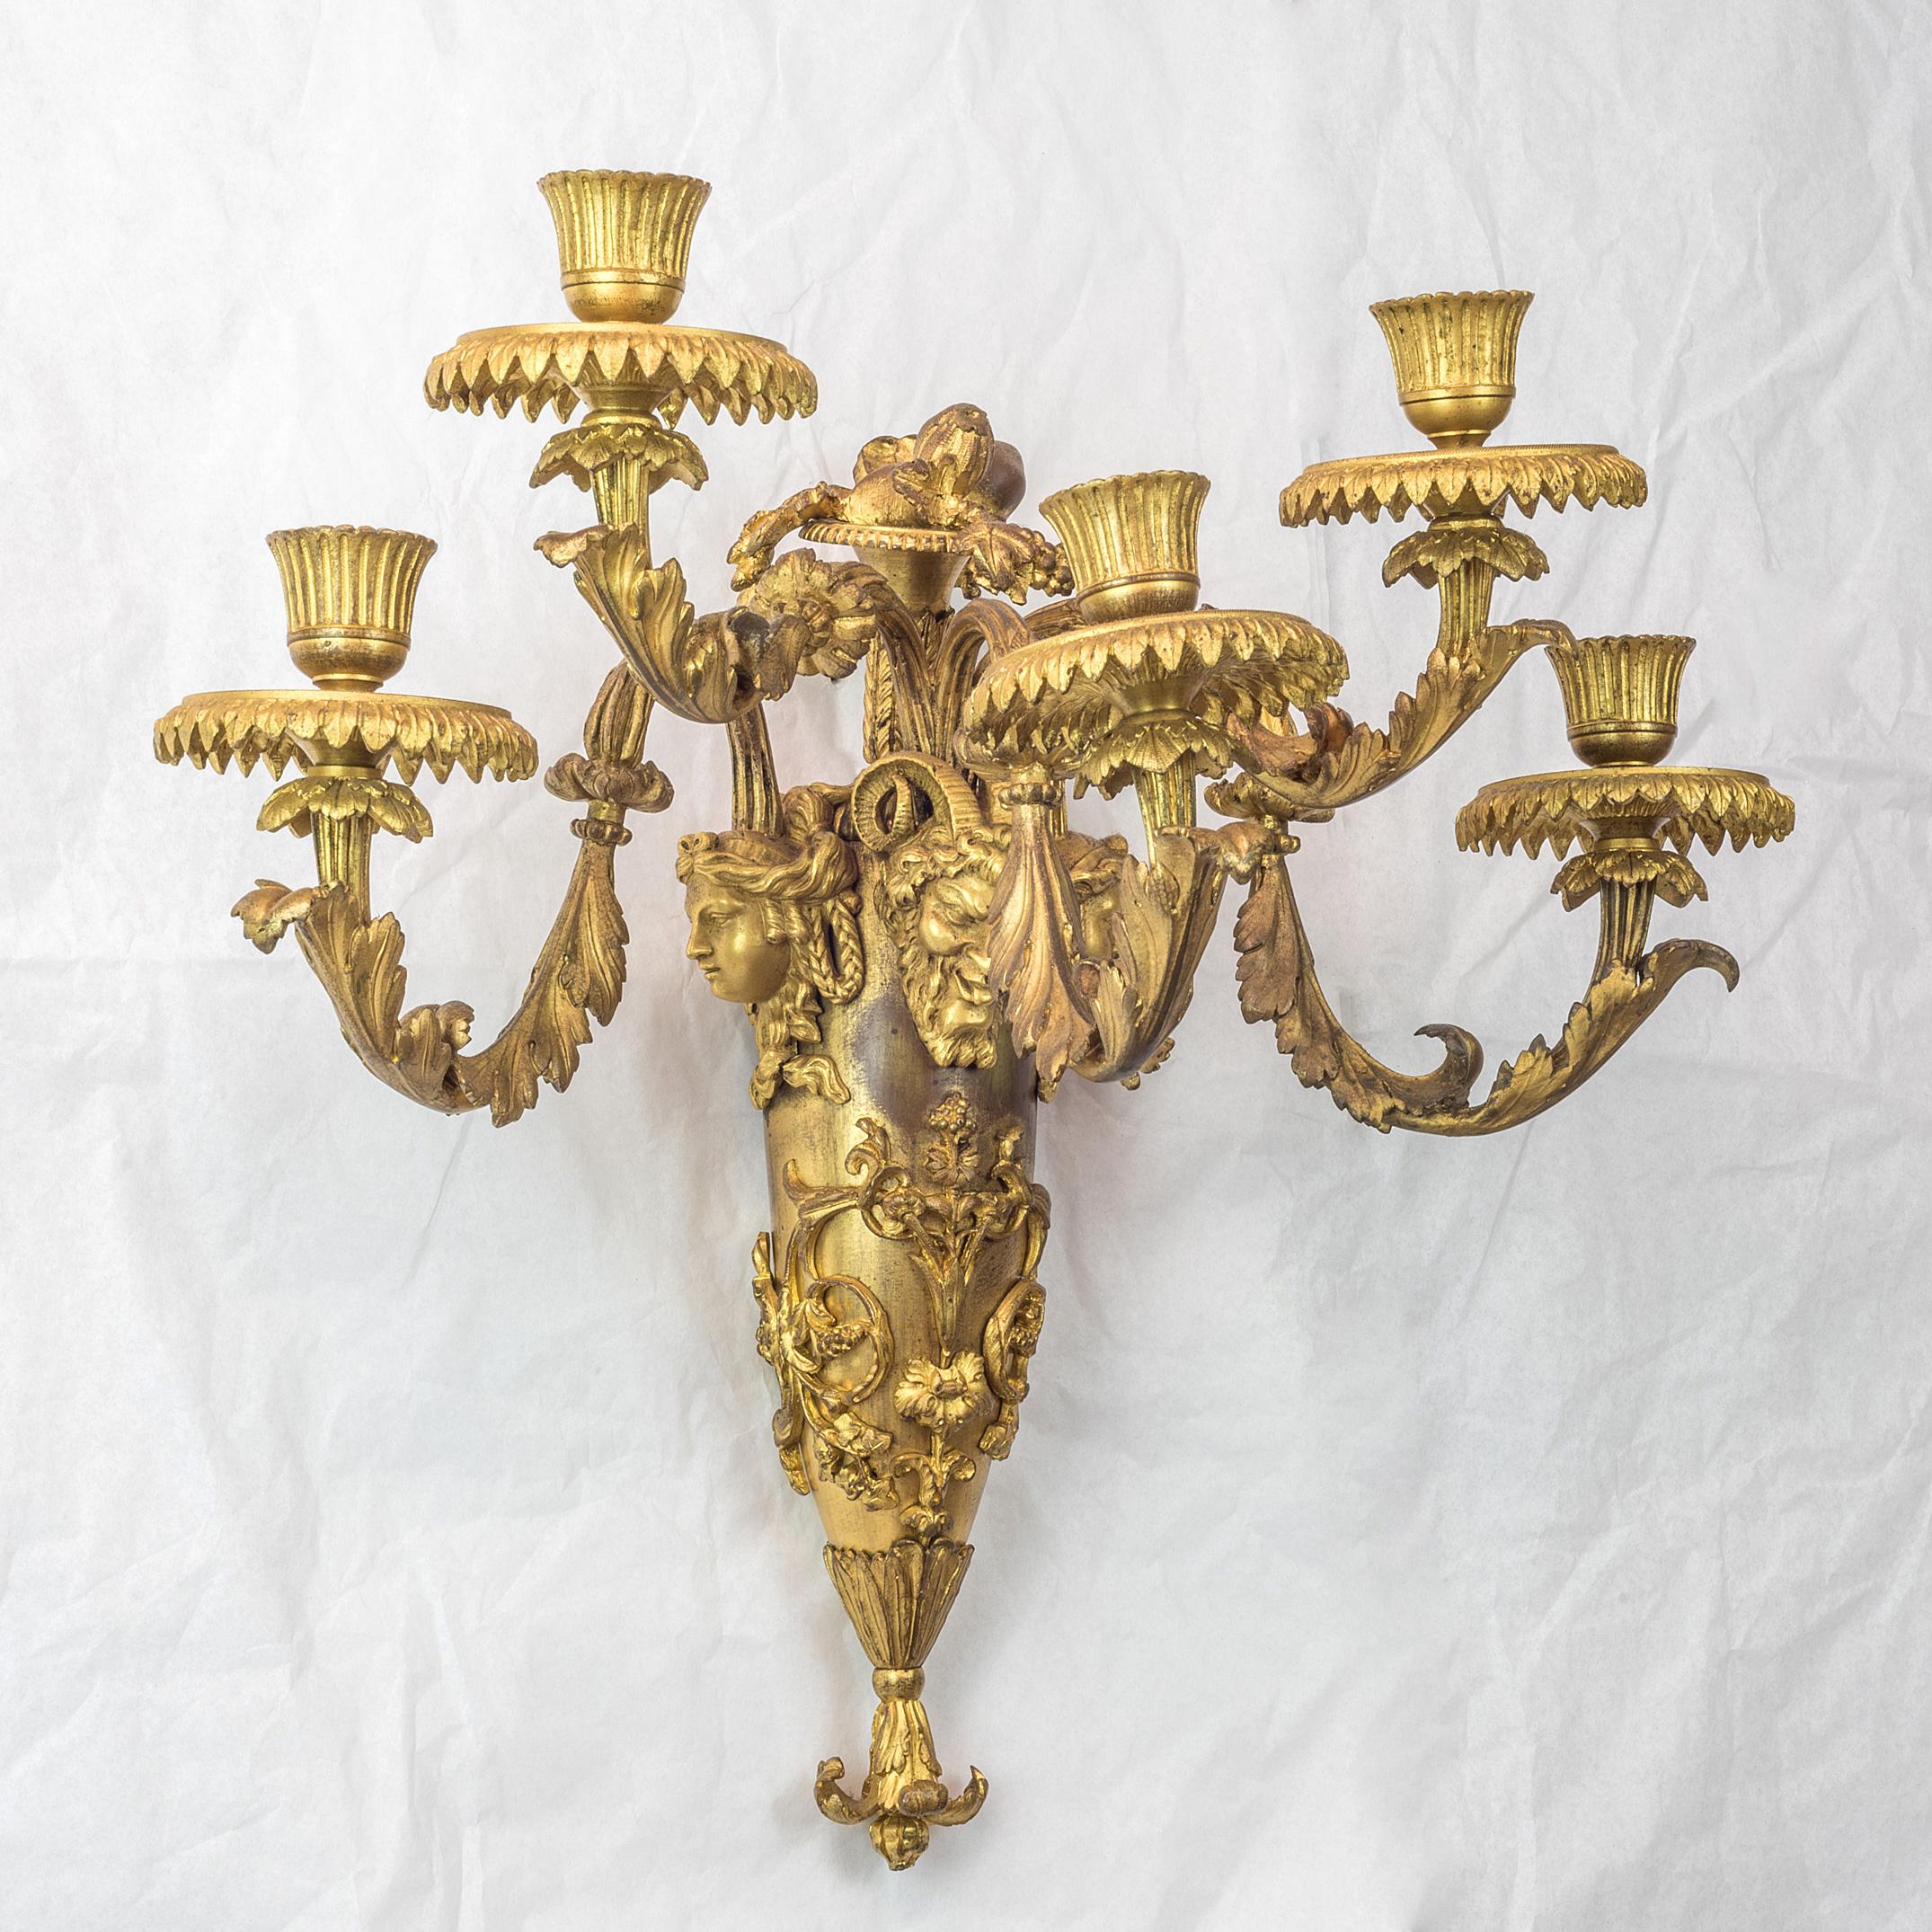 Ein fantastisches Paar französischer Wandleuchter aus vergoldeter Bronze im Louis-XVI-Stil mit fünf Lichtern

Jeweils mit länglicher, ovaler Fahne, die mit Rocaille-Rollen geschmückt ist und von einer Sagtr-Maske überragt wird, die von zwei